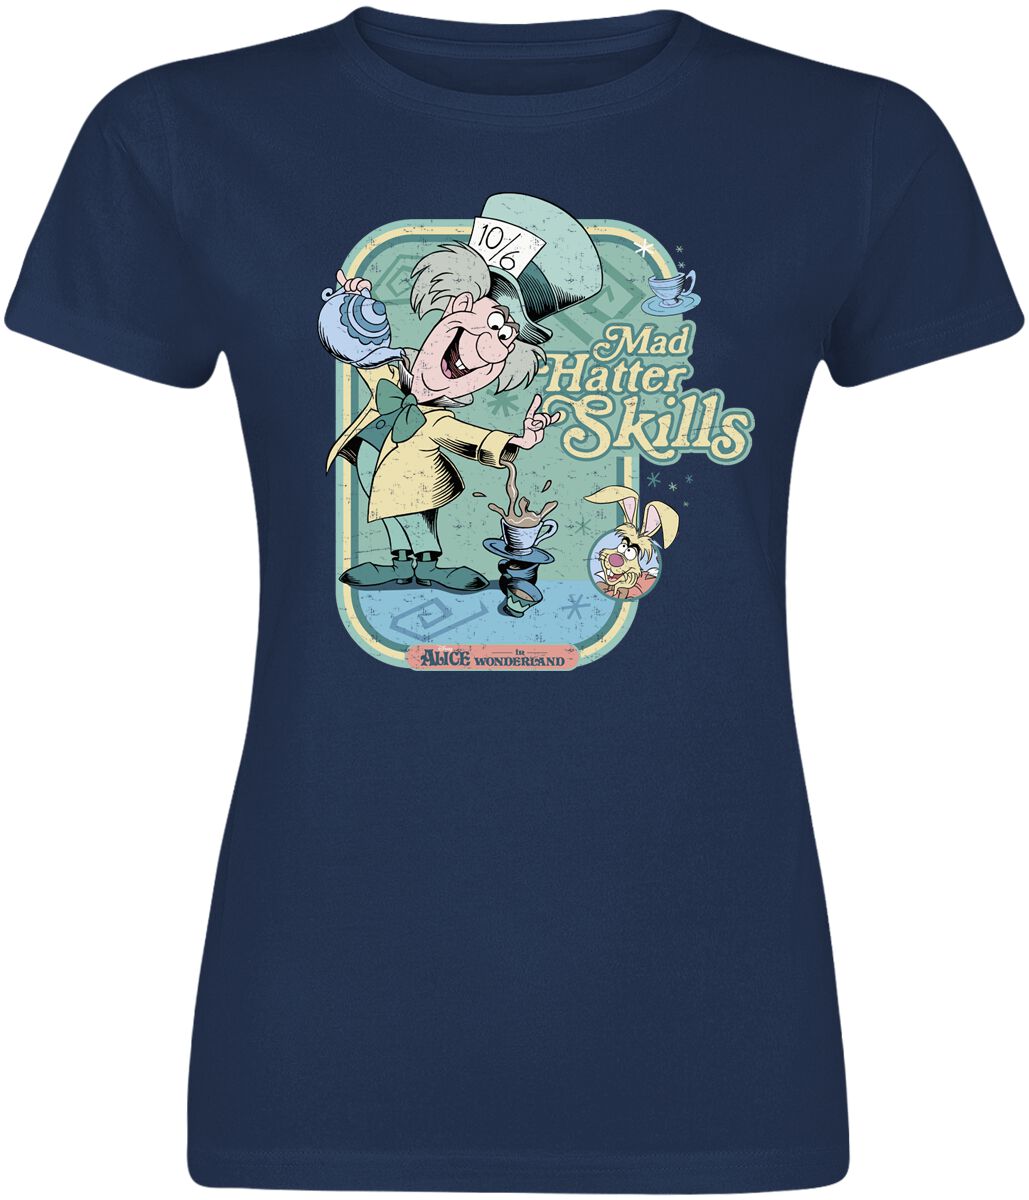 Alice im Wunderland - Disney T-Shirt - Mad hatter Skills - S bis XXL - für Damen - Größe L - navy  - EMP exklusives Merchandise!